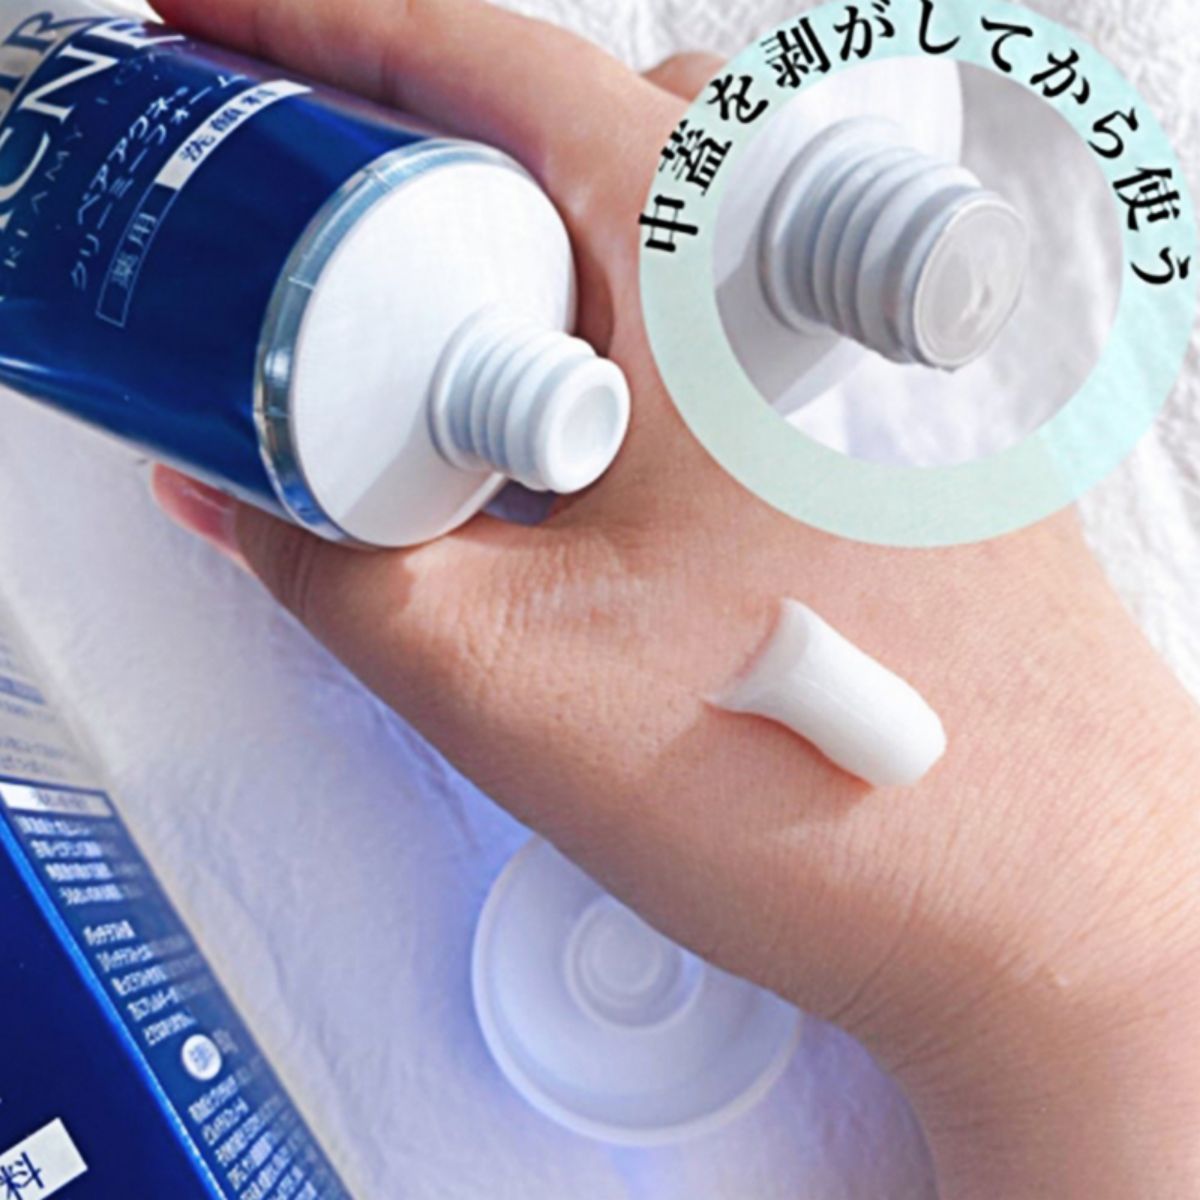 Lion Pair Acne Creamy Foam Facial Wash 80g